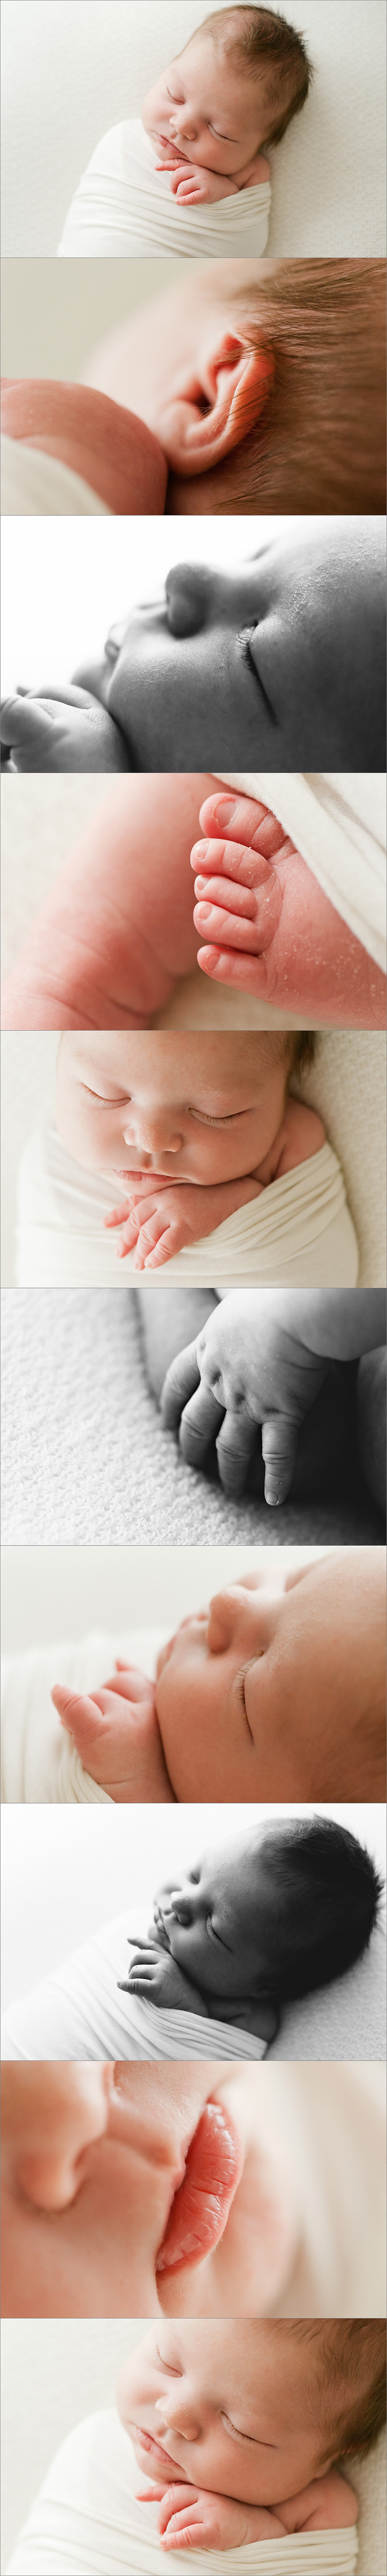 beautiful newborn baby images